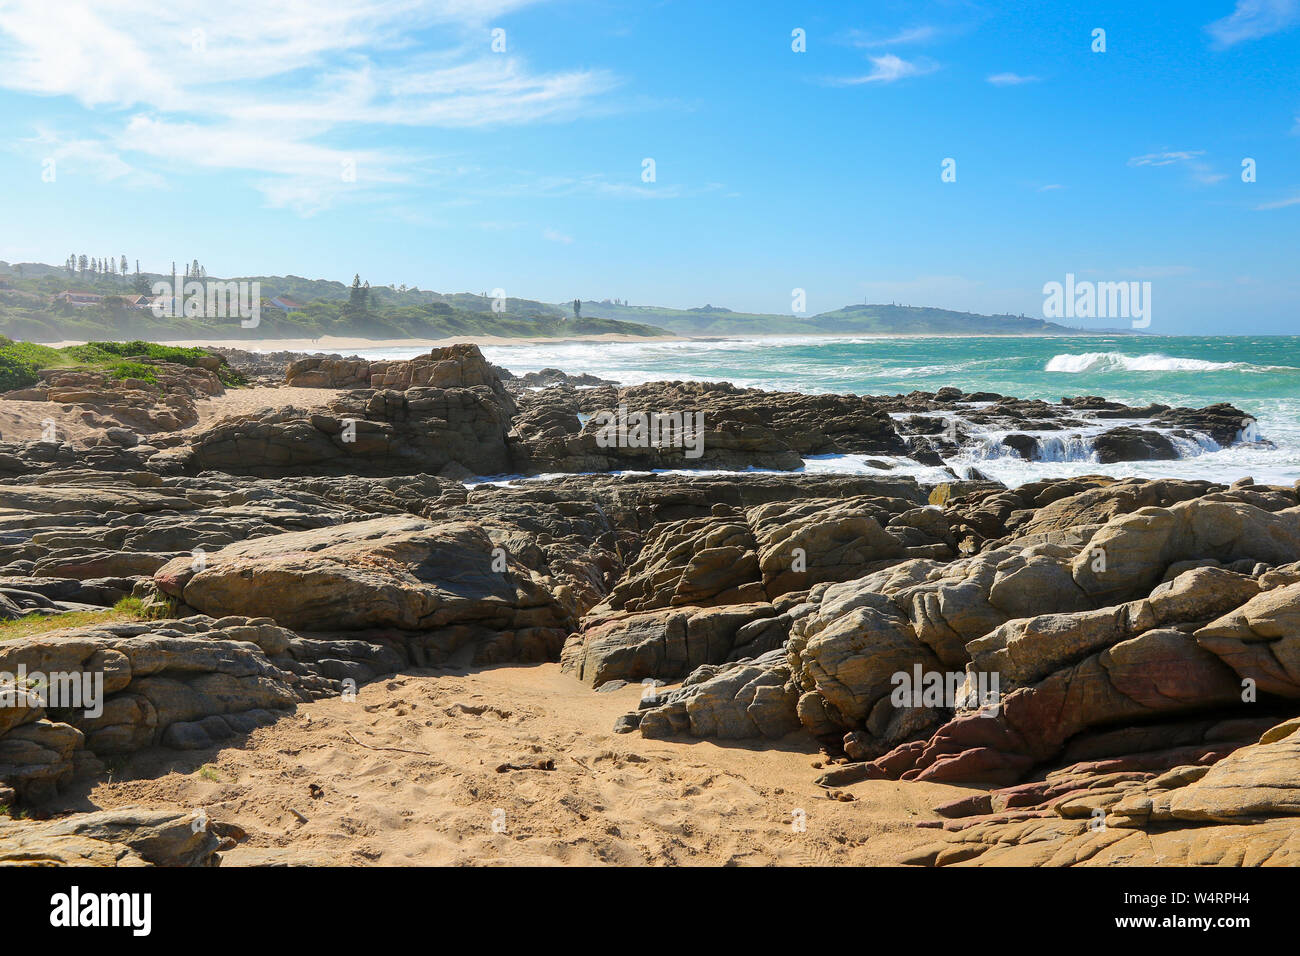 Spiaggia di Umzumbe a KwaZulu-Natal, Sudafrica - Stazione balneare nell'Oceano Indiano Foto Stock